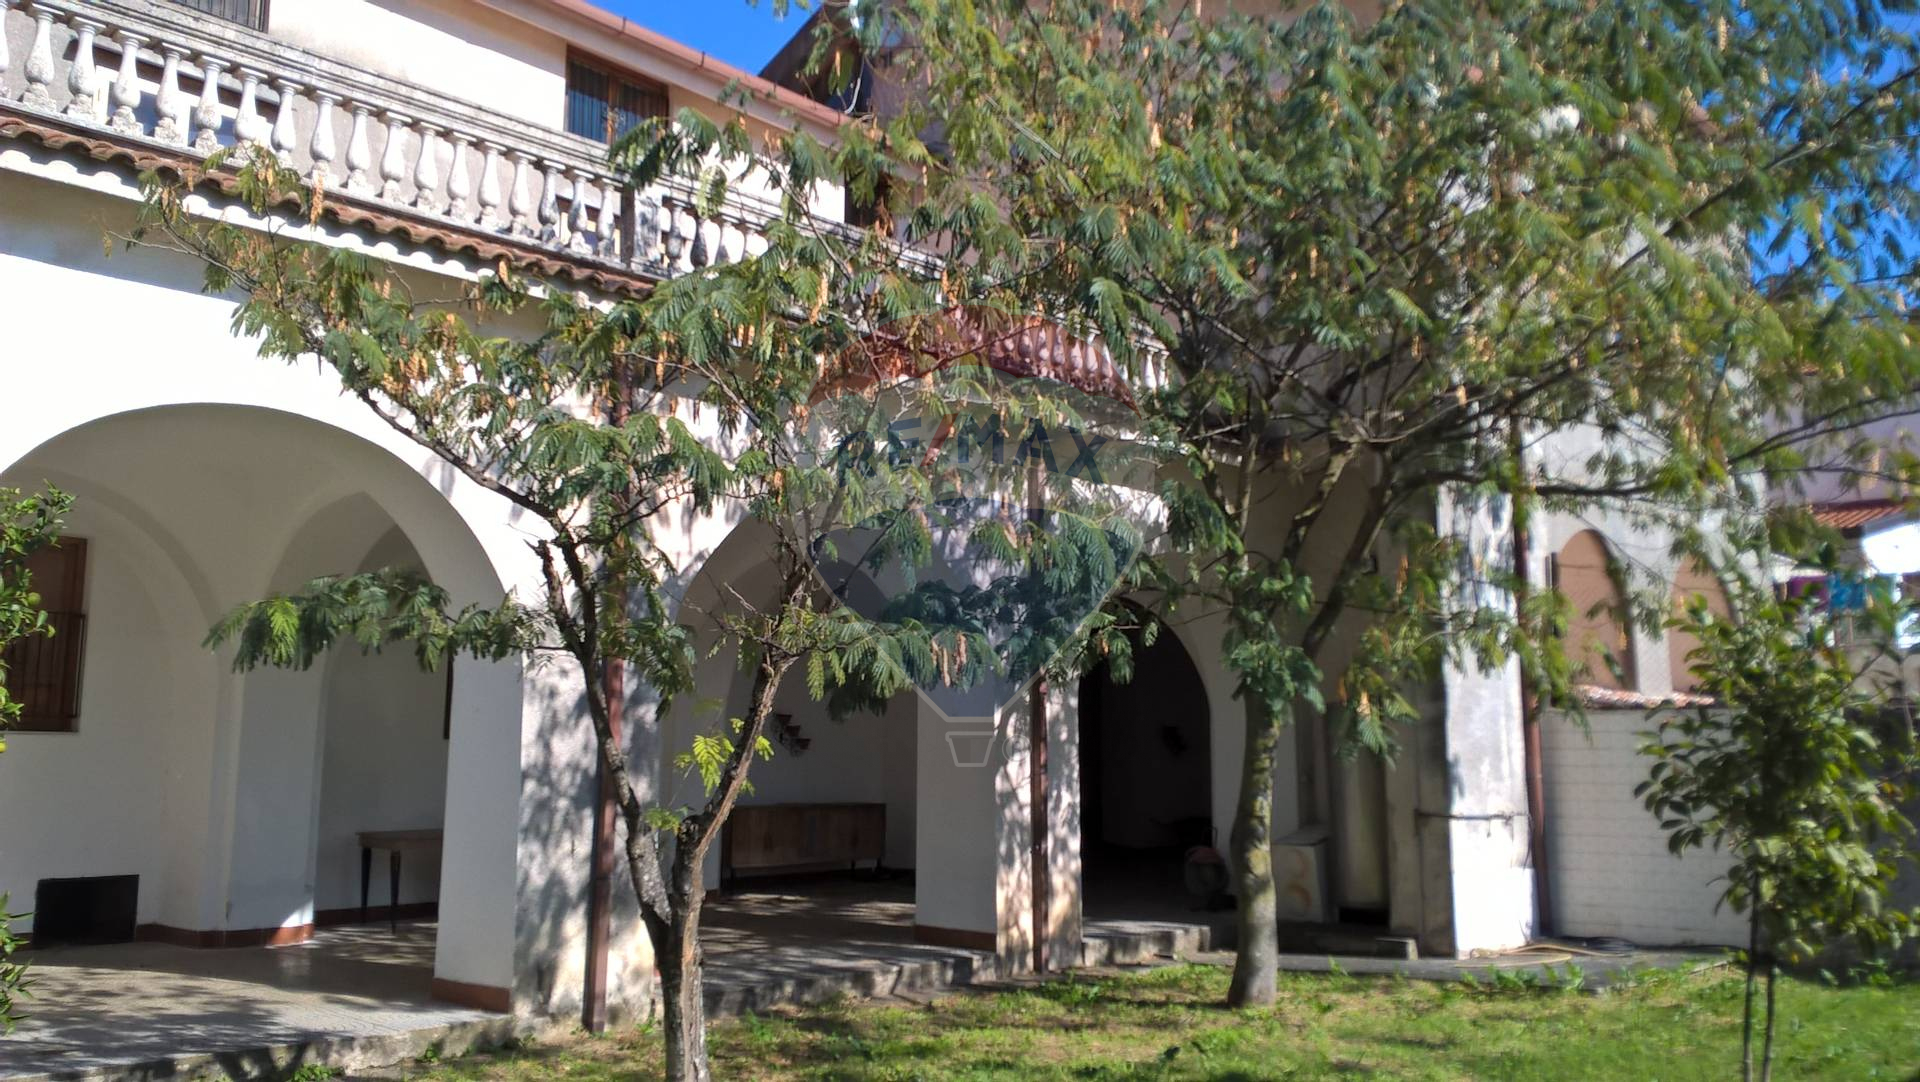 Villa Unifamiliare - Indipendente, 600 Mq, Affitto - Giffoni Valle Piana (SA)